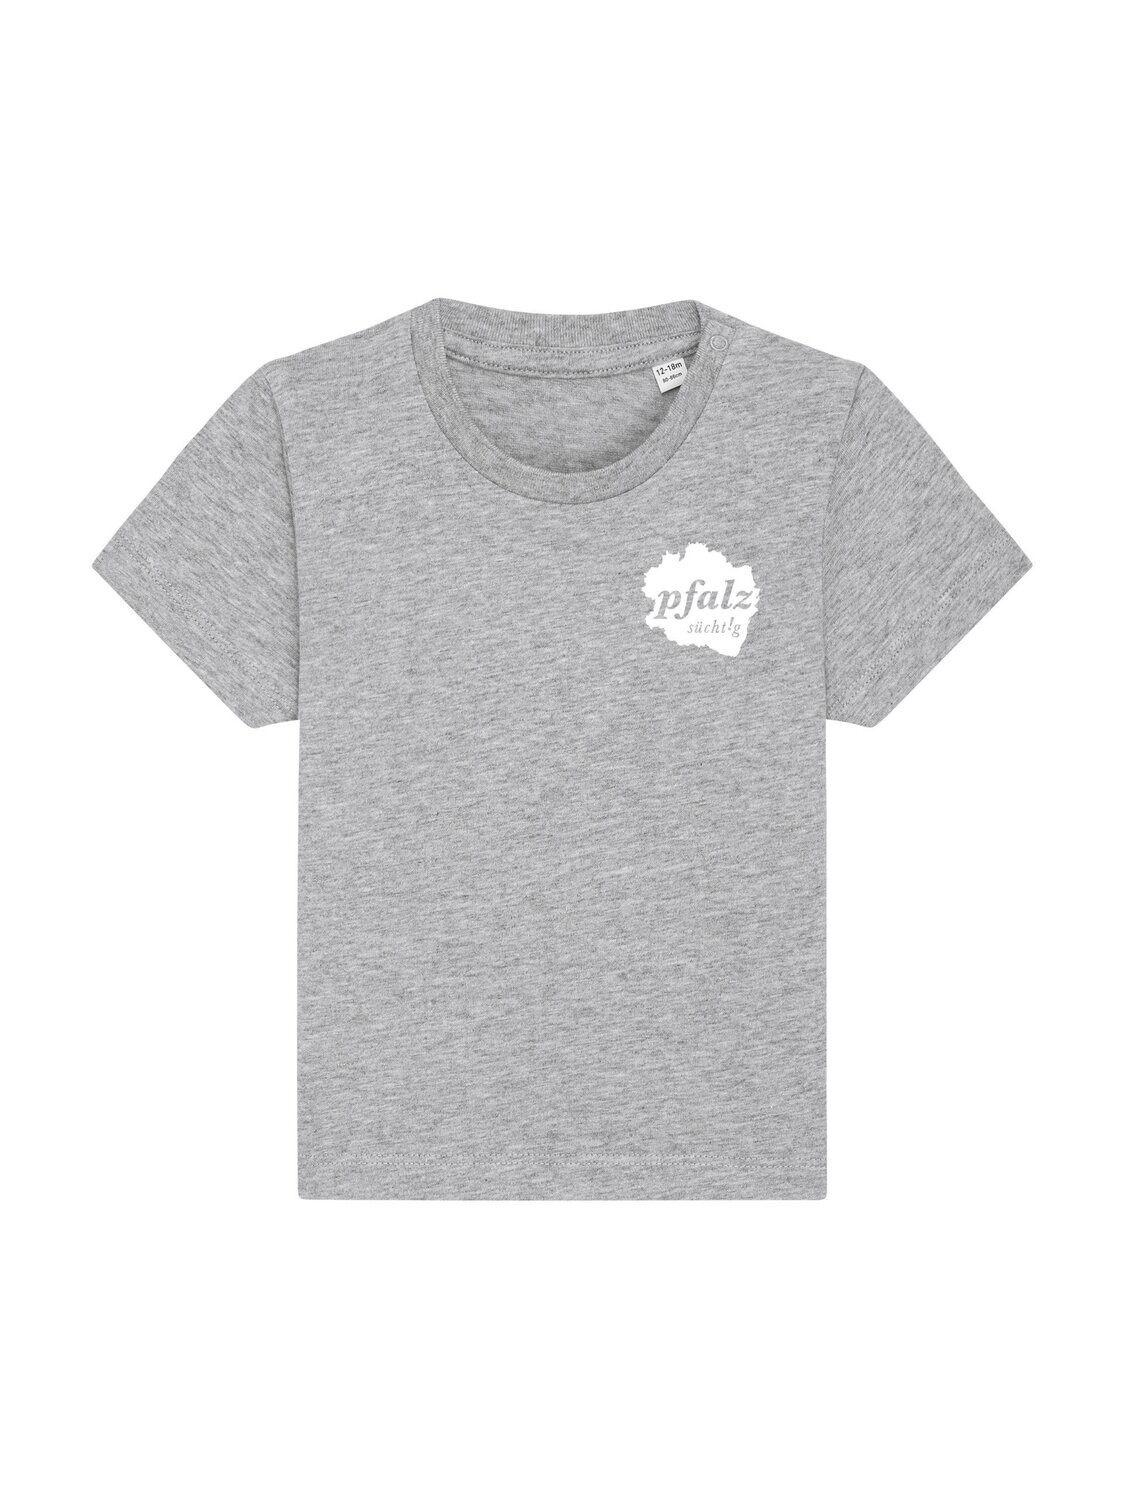 T-Shirt Baby "pfalzgrenze" grau (Logo in weiß)